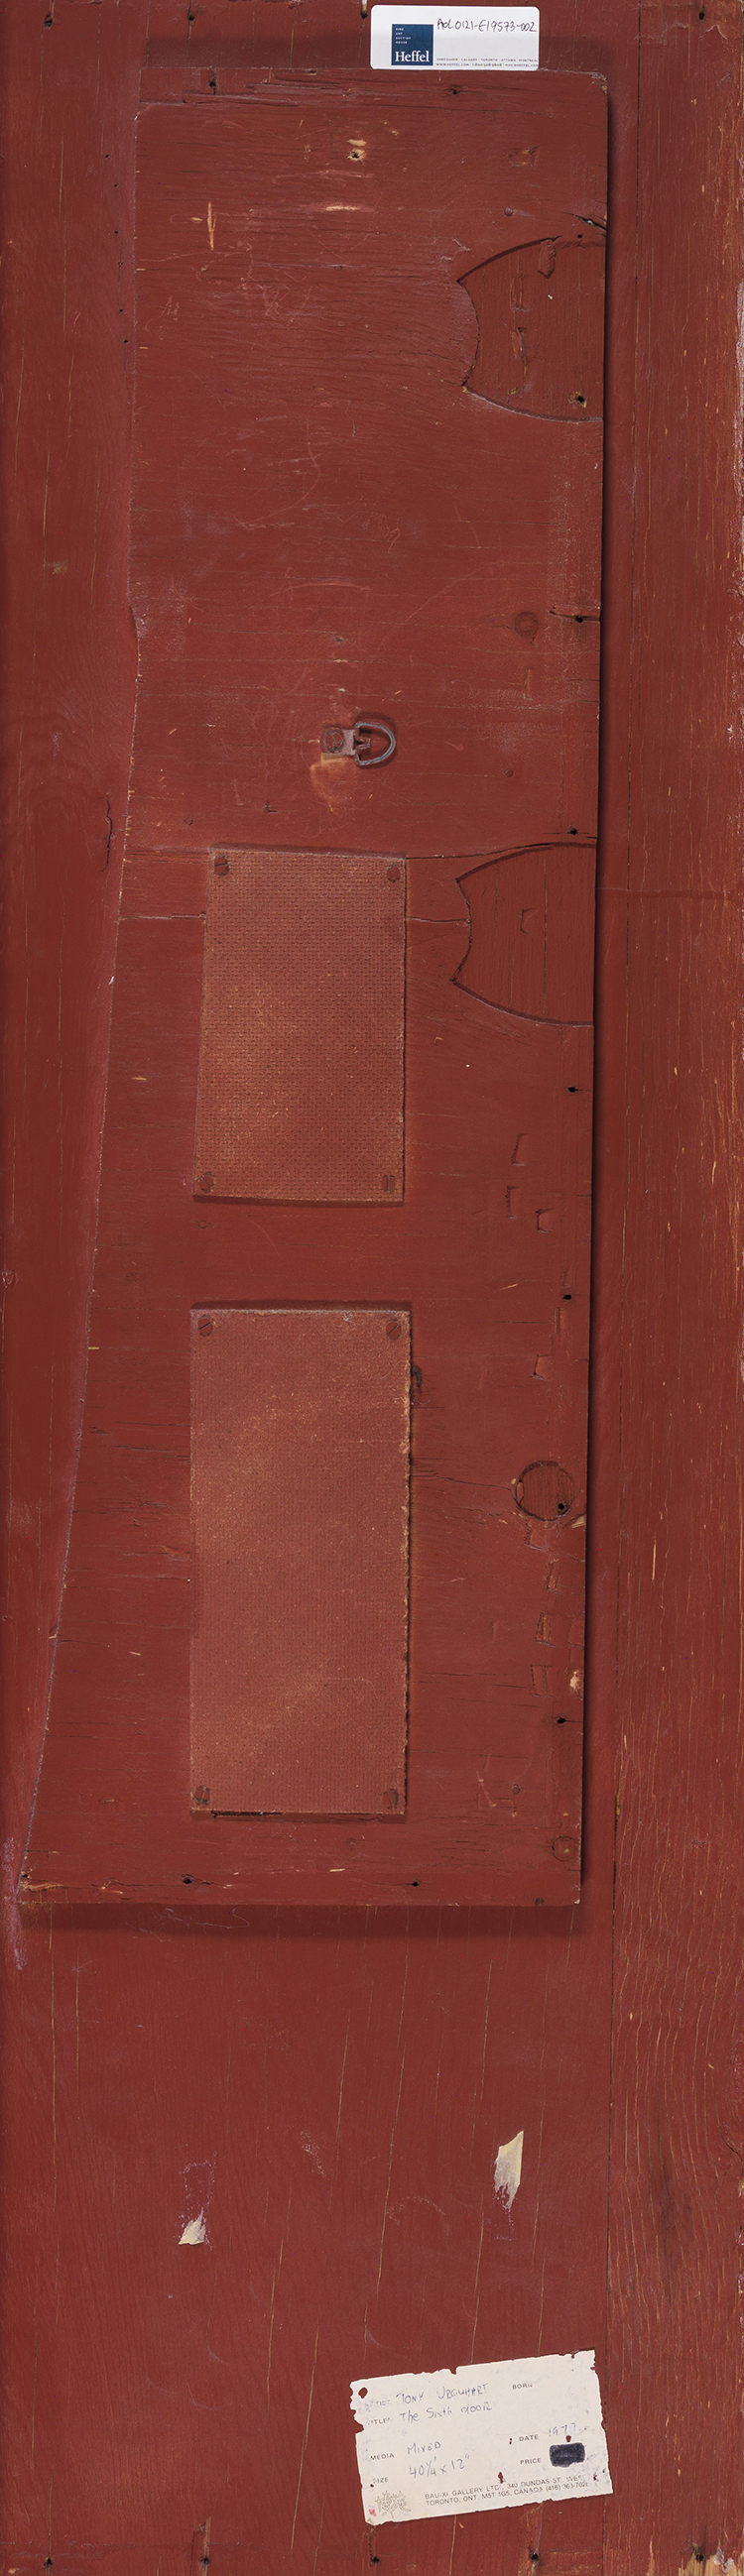 The Sixth Door by Anthony Morse (Tony) Urquhart